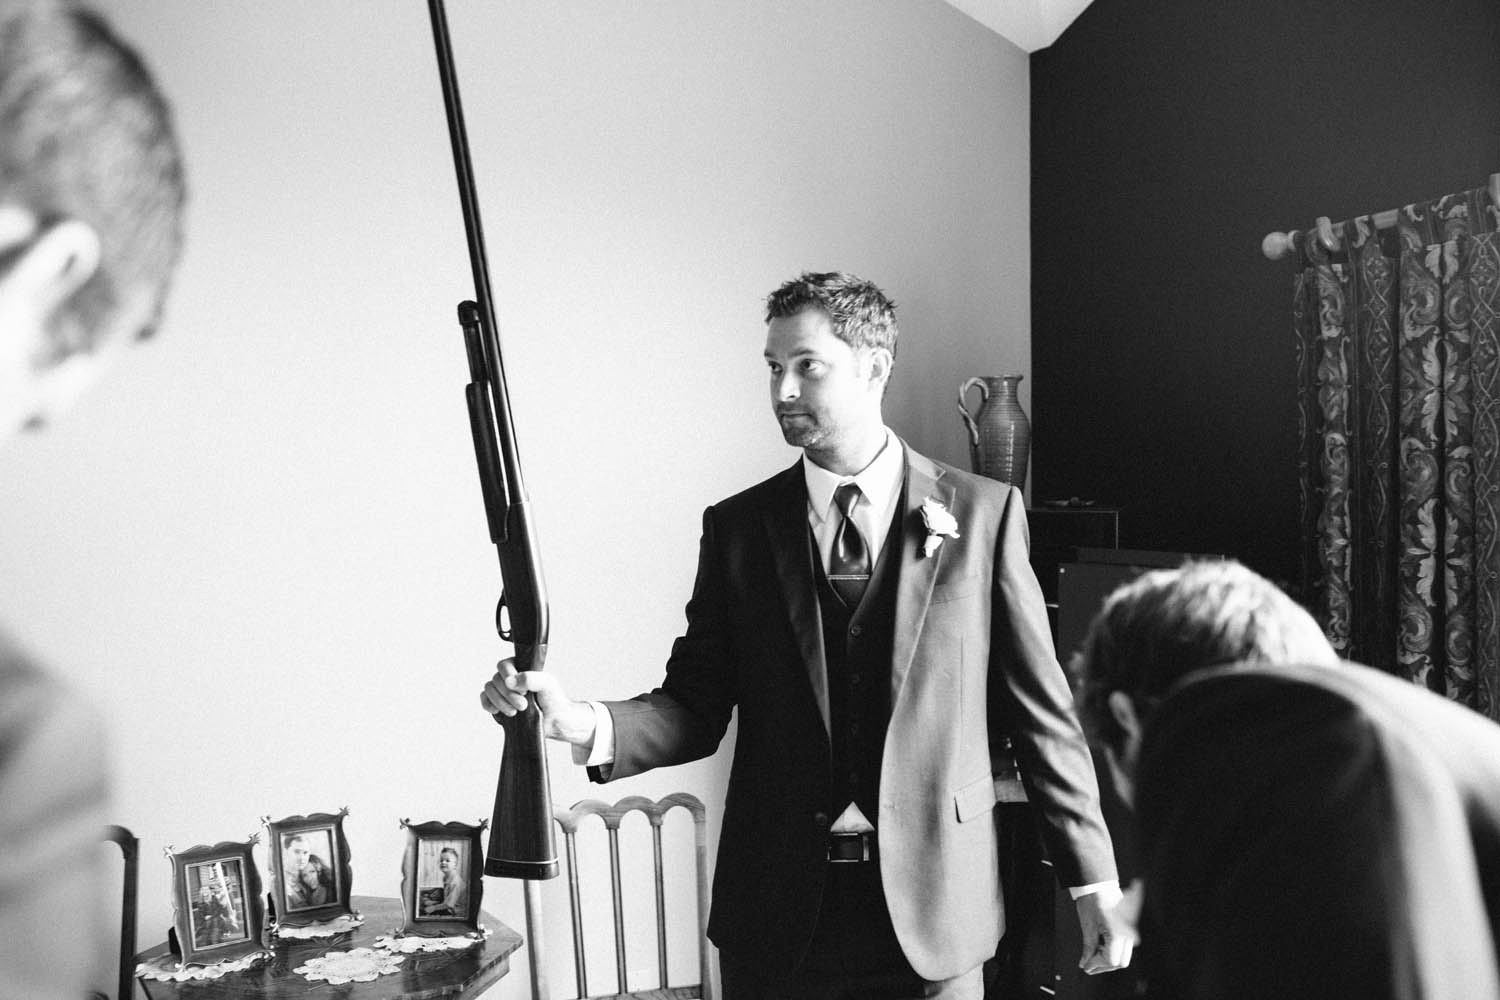 Ashlee + Tyler Kampphotography Winnipeg Wedding Photographers 